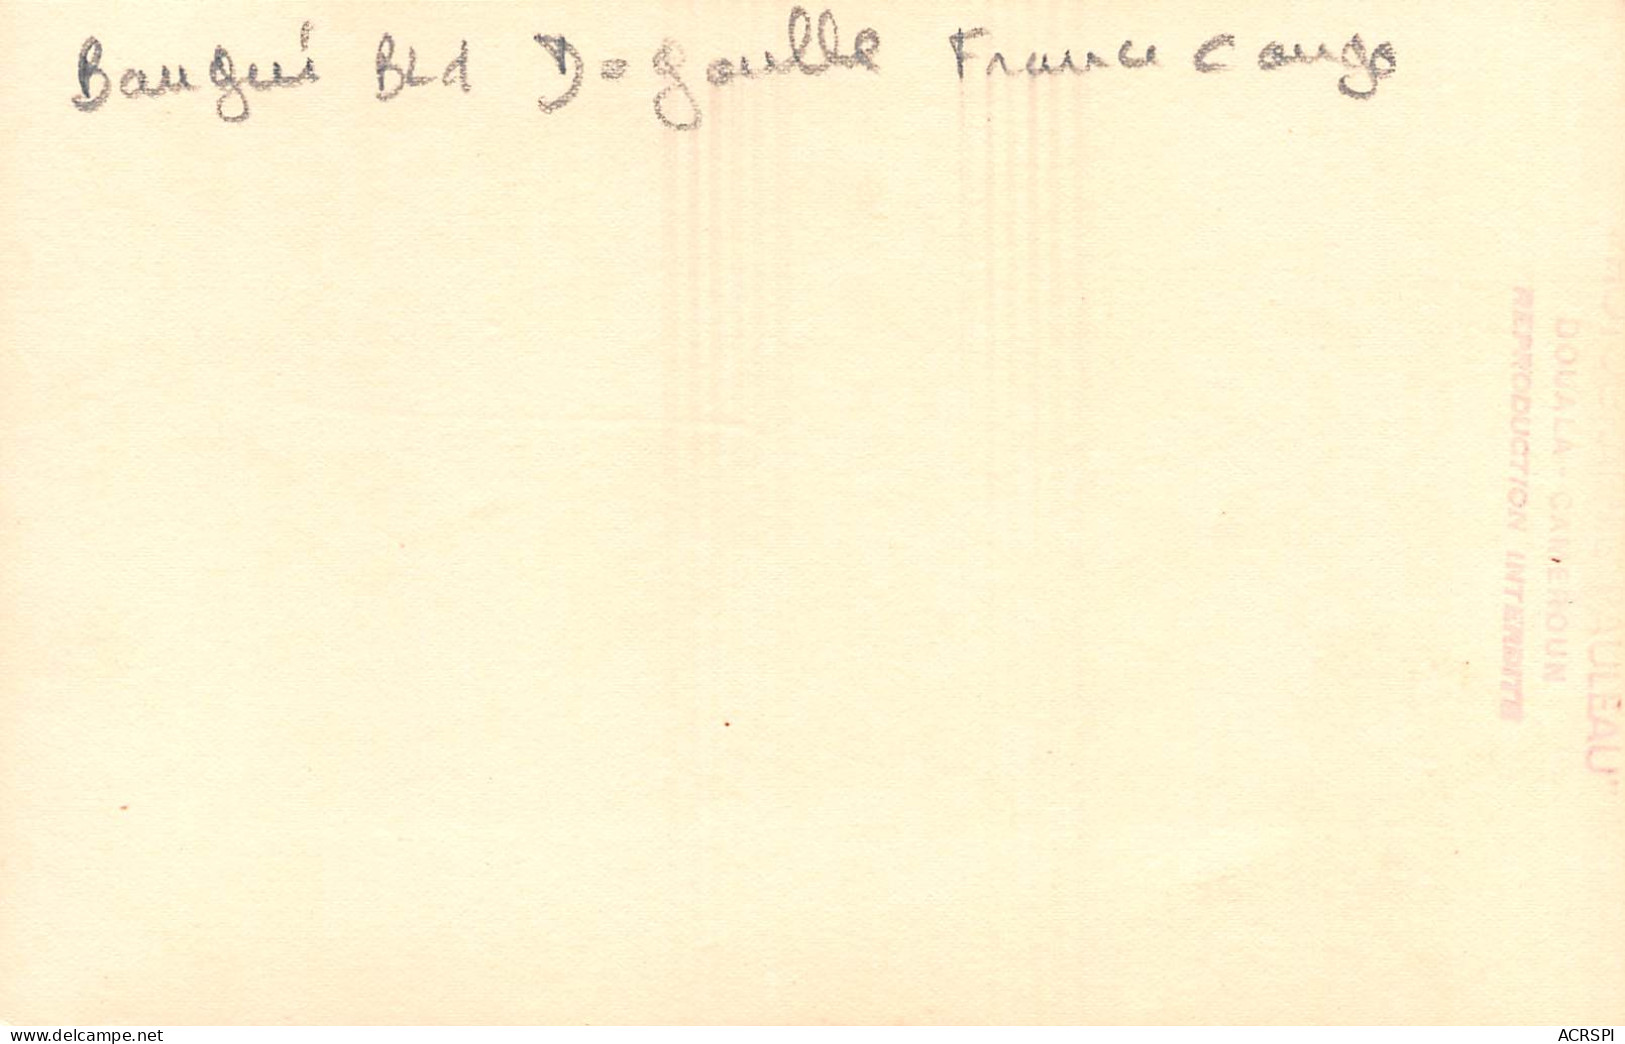 BANGUI République Centrafricaine France Congo Bld De Gaulle Photo PAULEA Non Circulé (Scan R/V) N° 53 \MP7121 - República Centroafricana